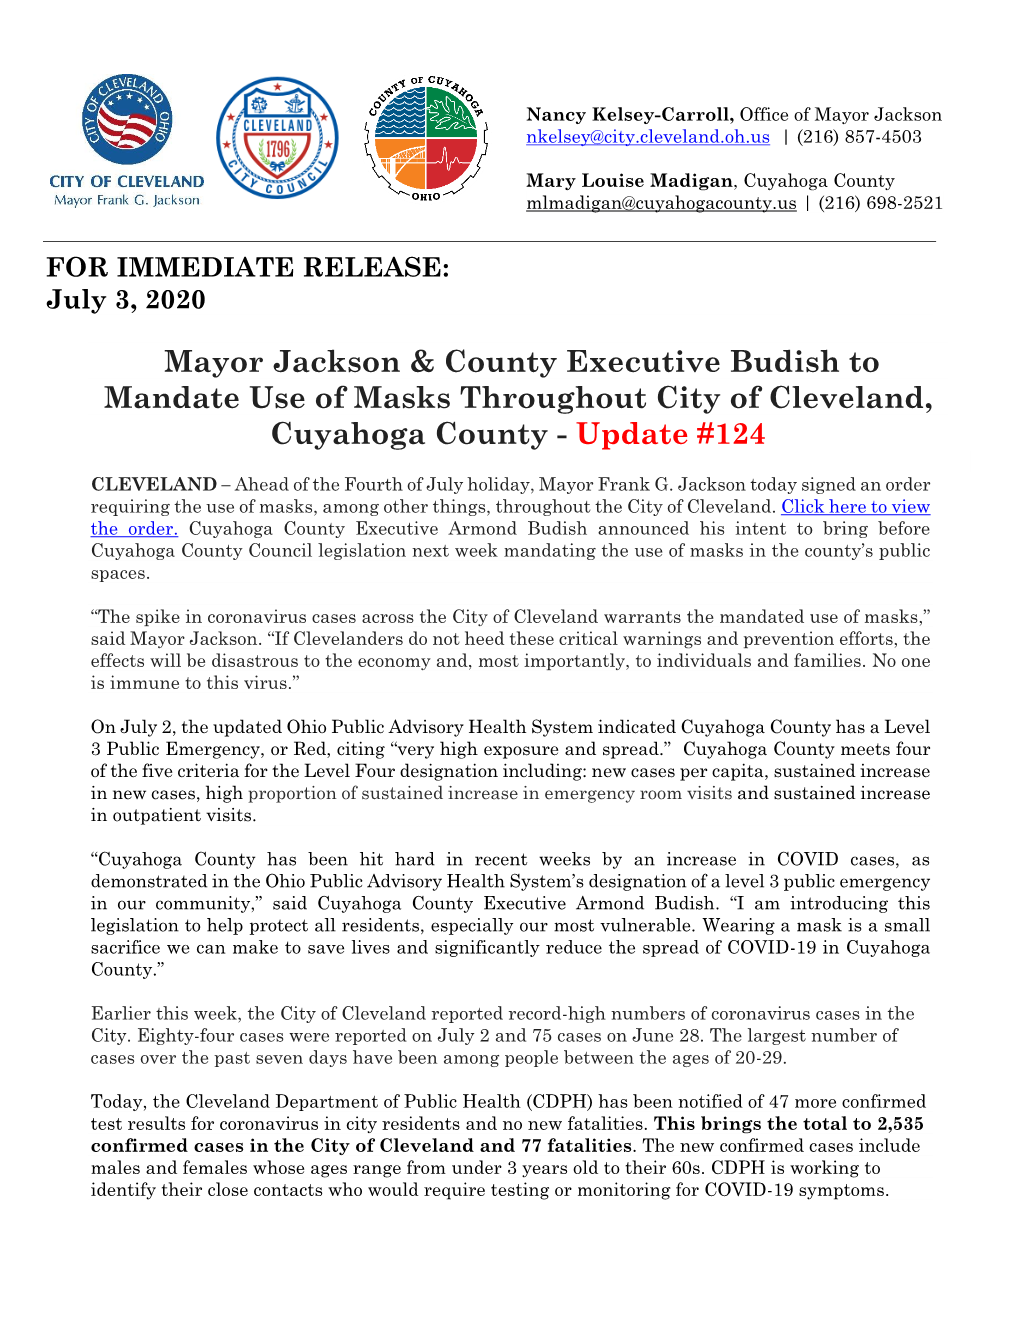 Mayor Jackson & County Executive Budish to Mandate Use of Masks